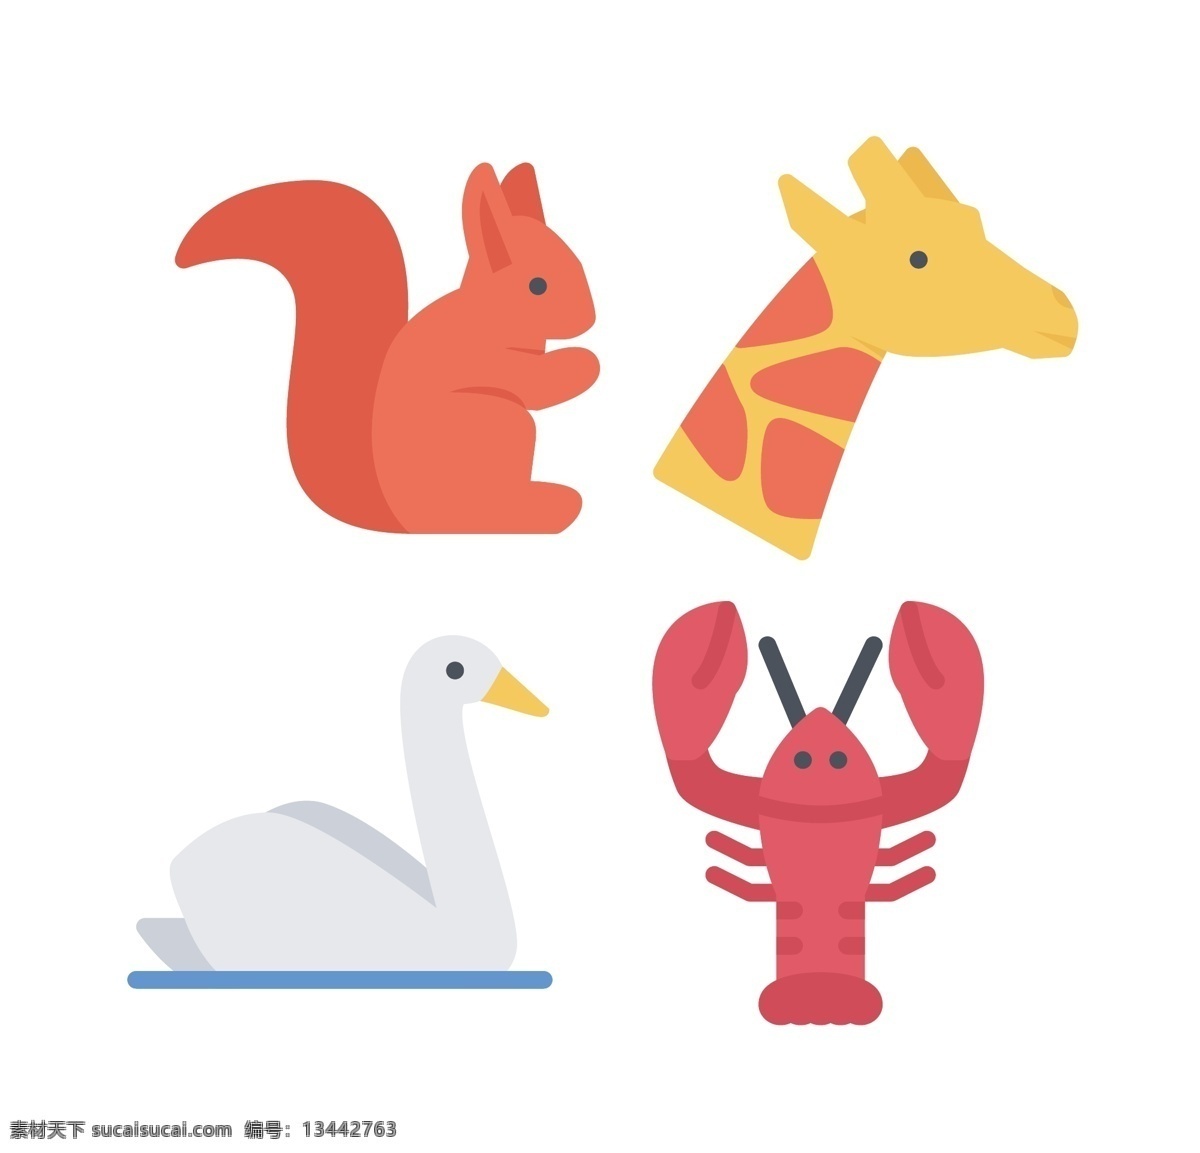 宠物 动物 精美 icon 图标 狐狸 雄鹿 蝎子 表情图标 创意图标 水滴 图标设计 图标下载 网页图标